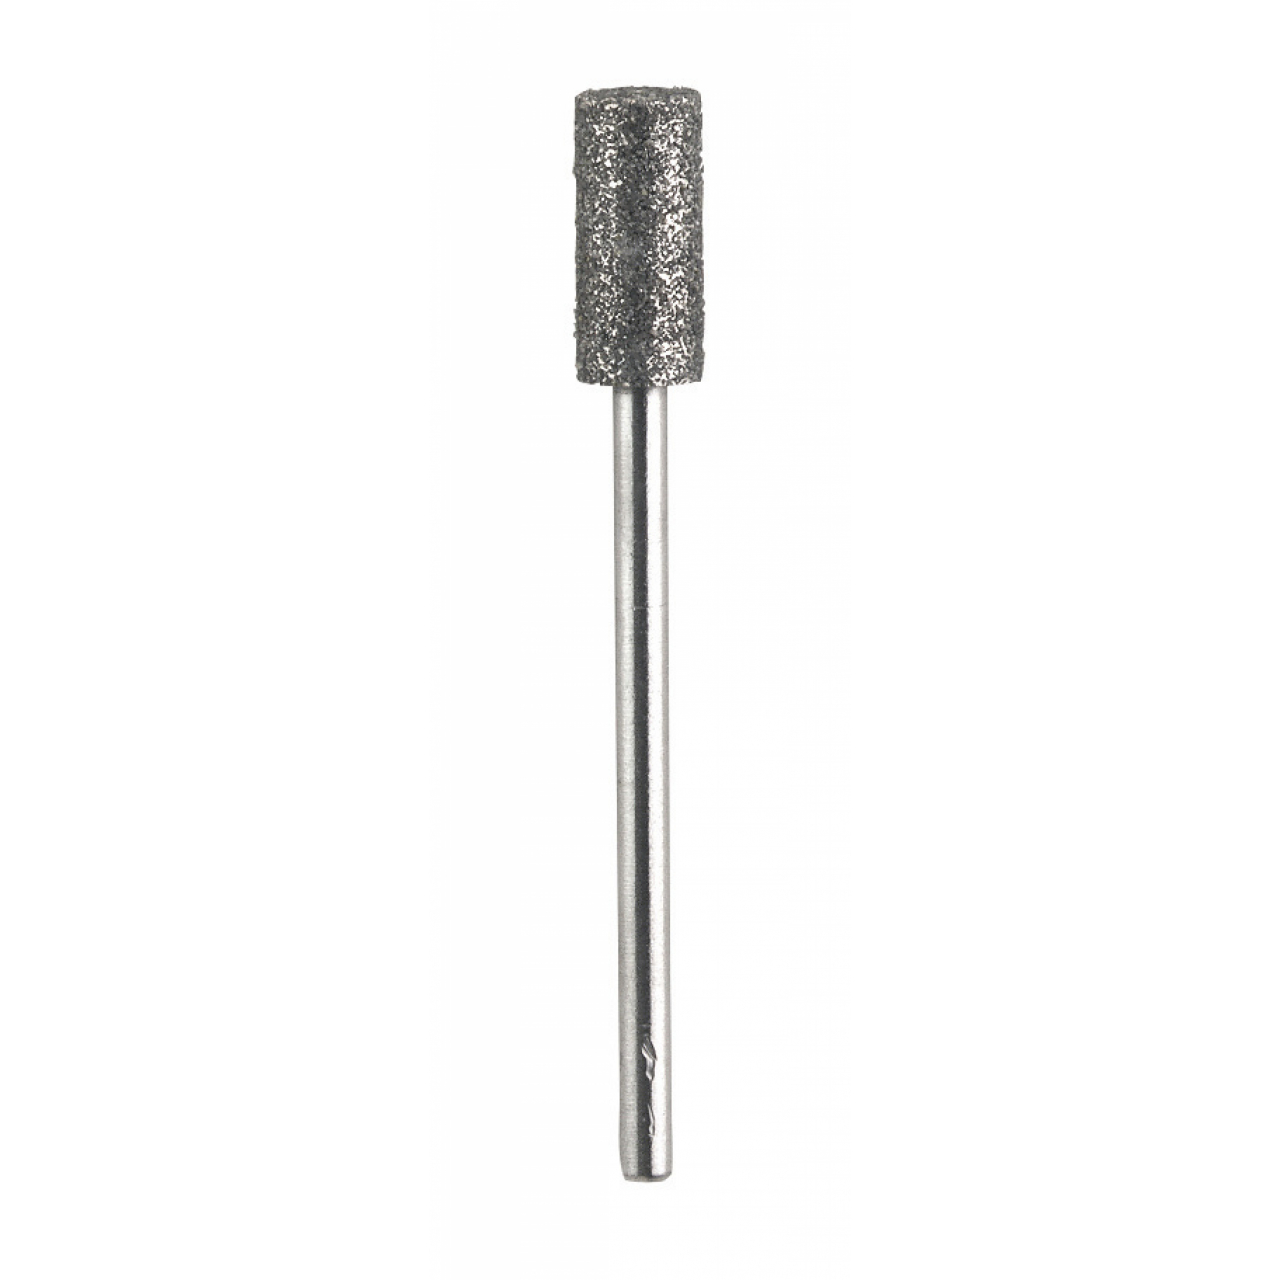 Csiszolófej ProPig akkumulátoros fogcsiszoló készülékhez - 5,4 mm